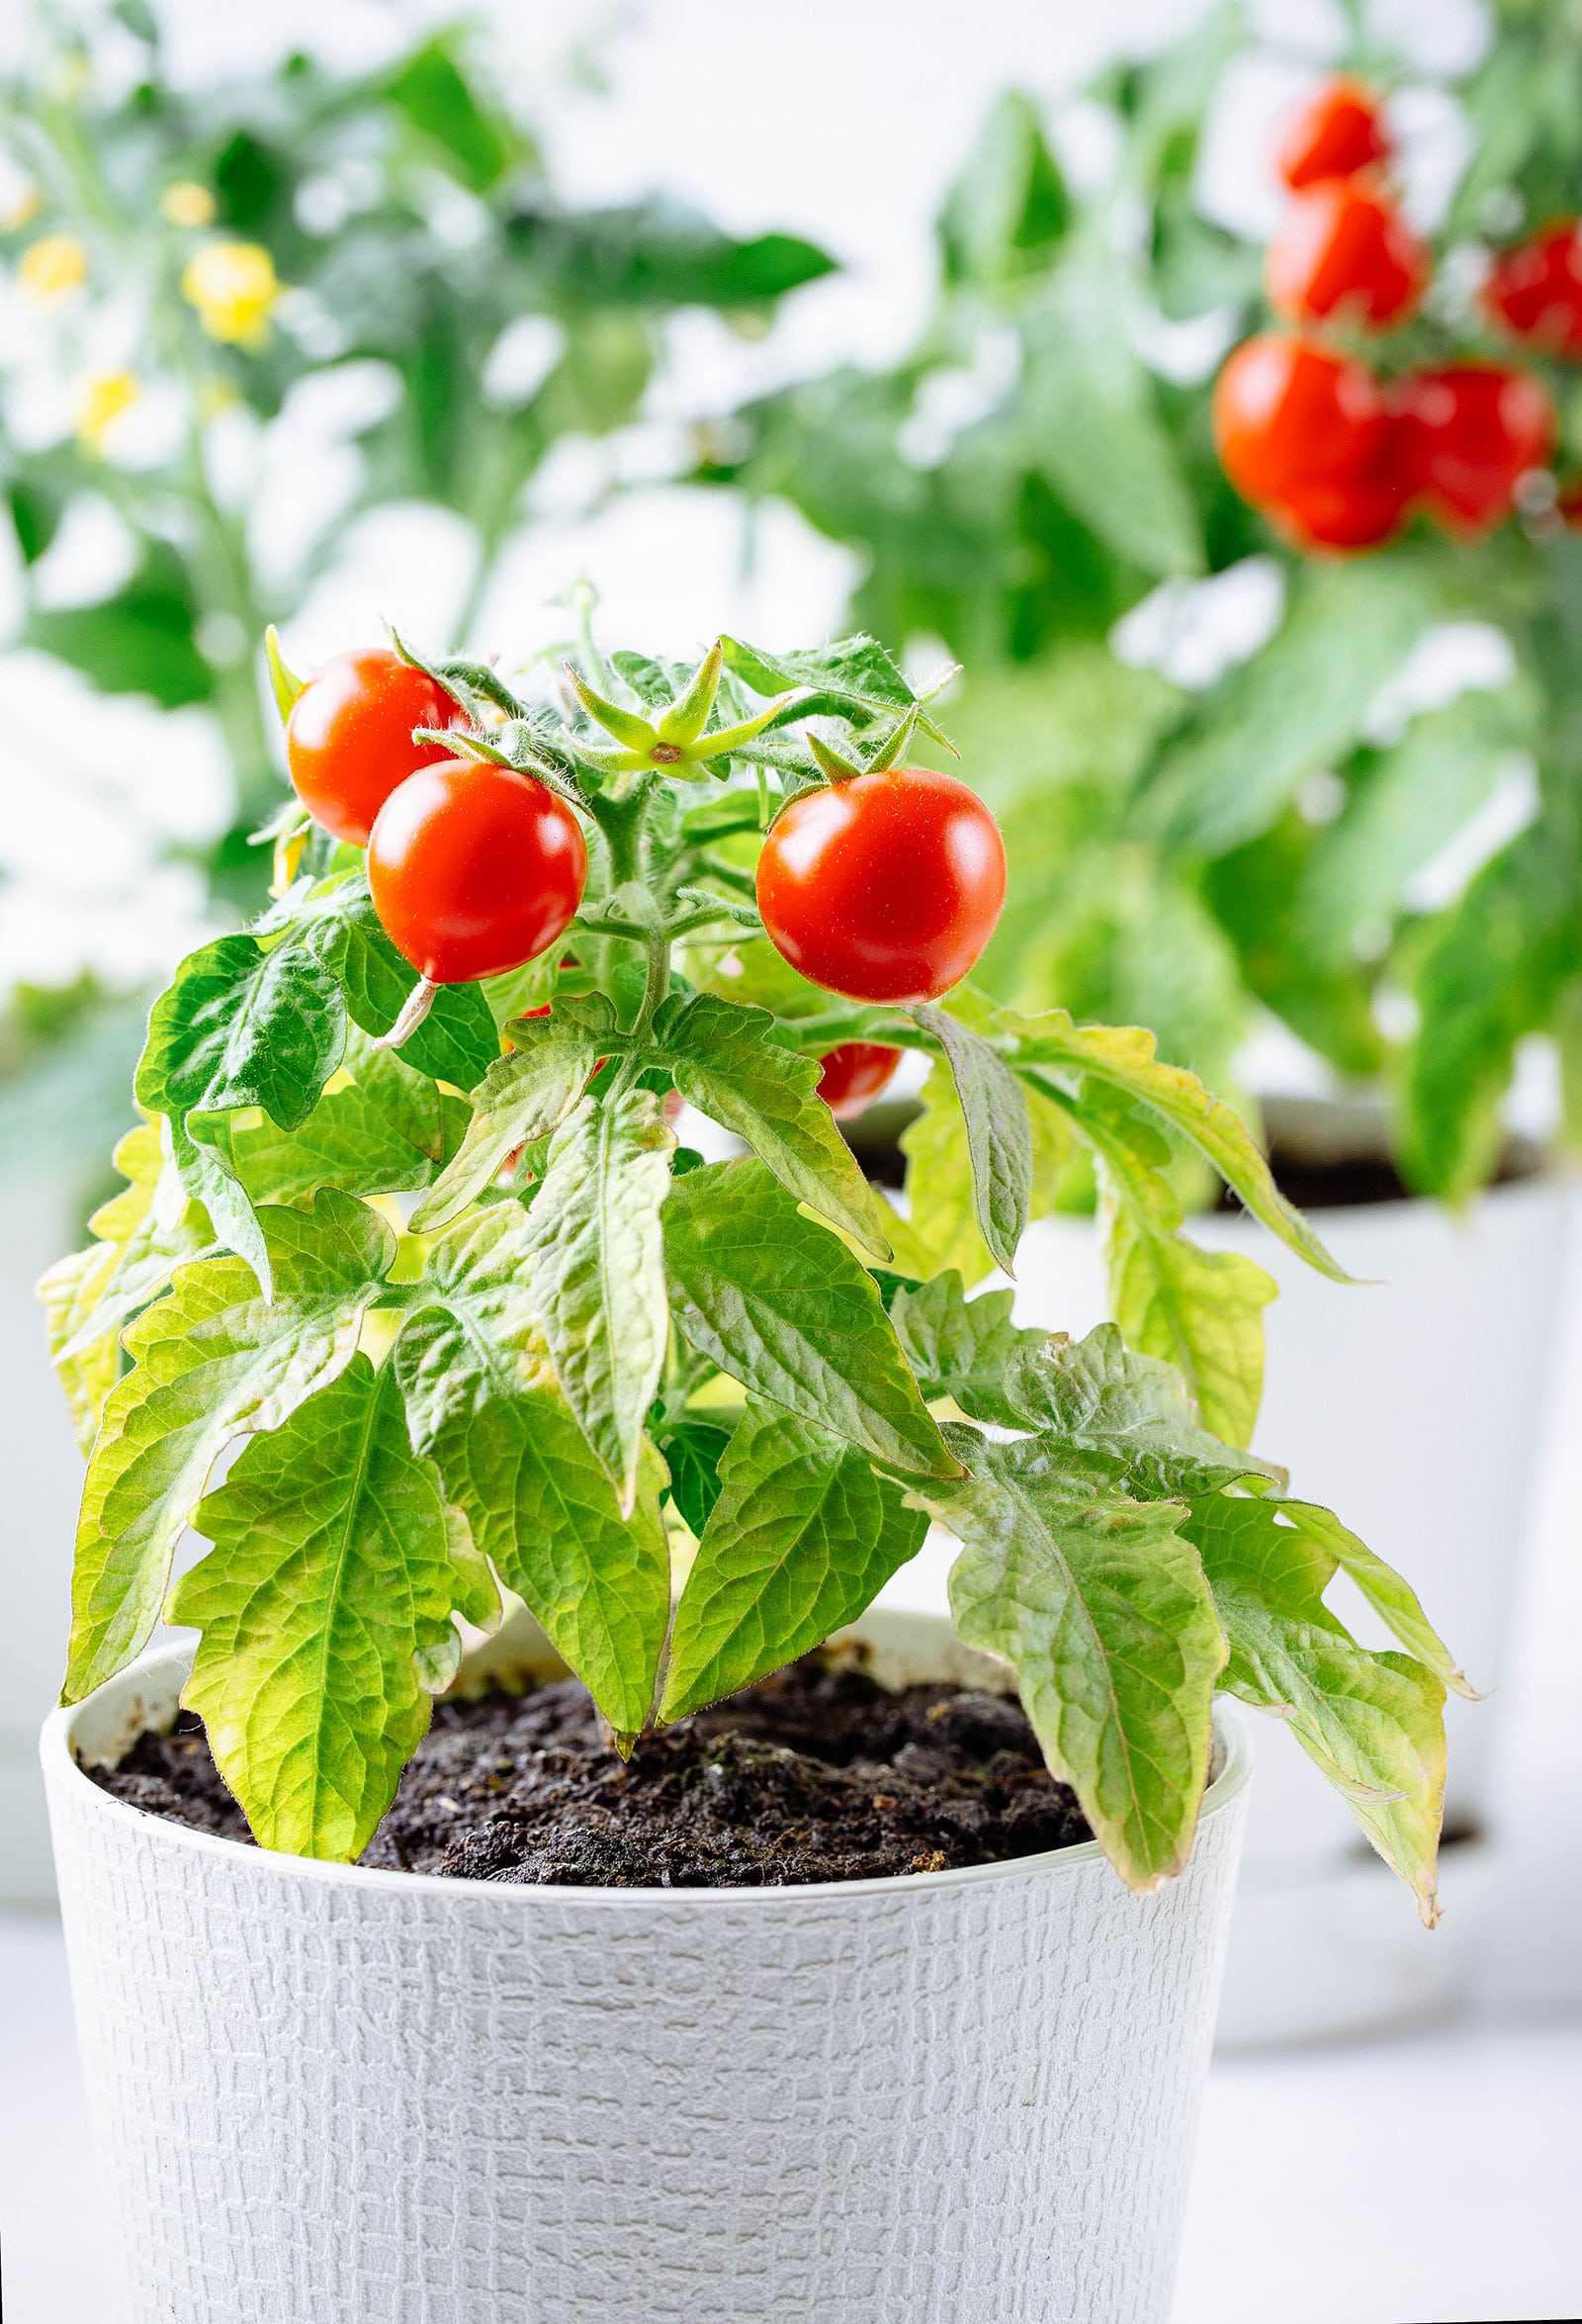 Growing Indoor Vegetable Plants A Beginner’s Guide